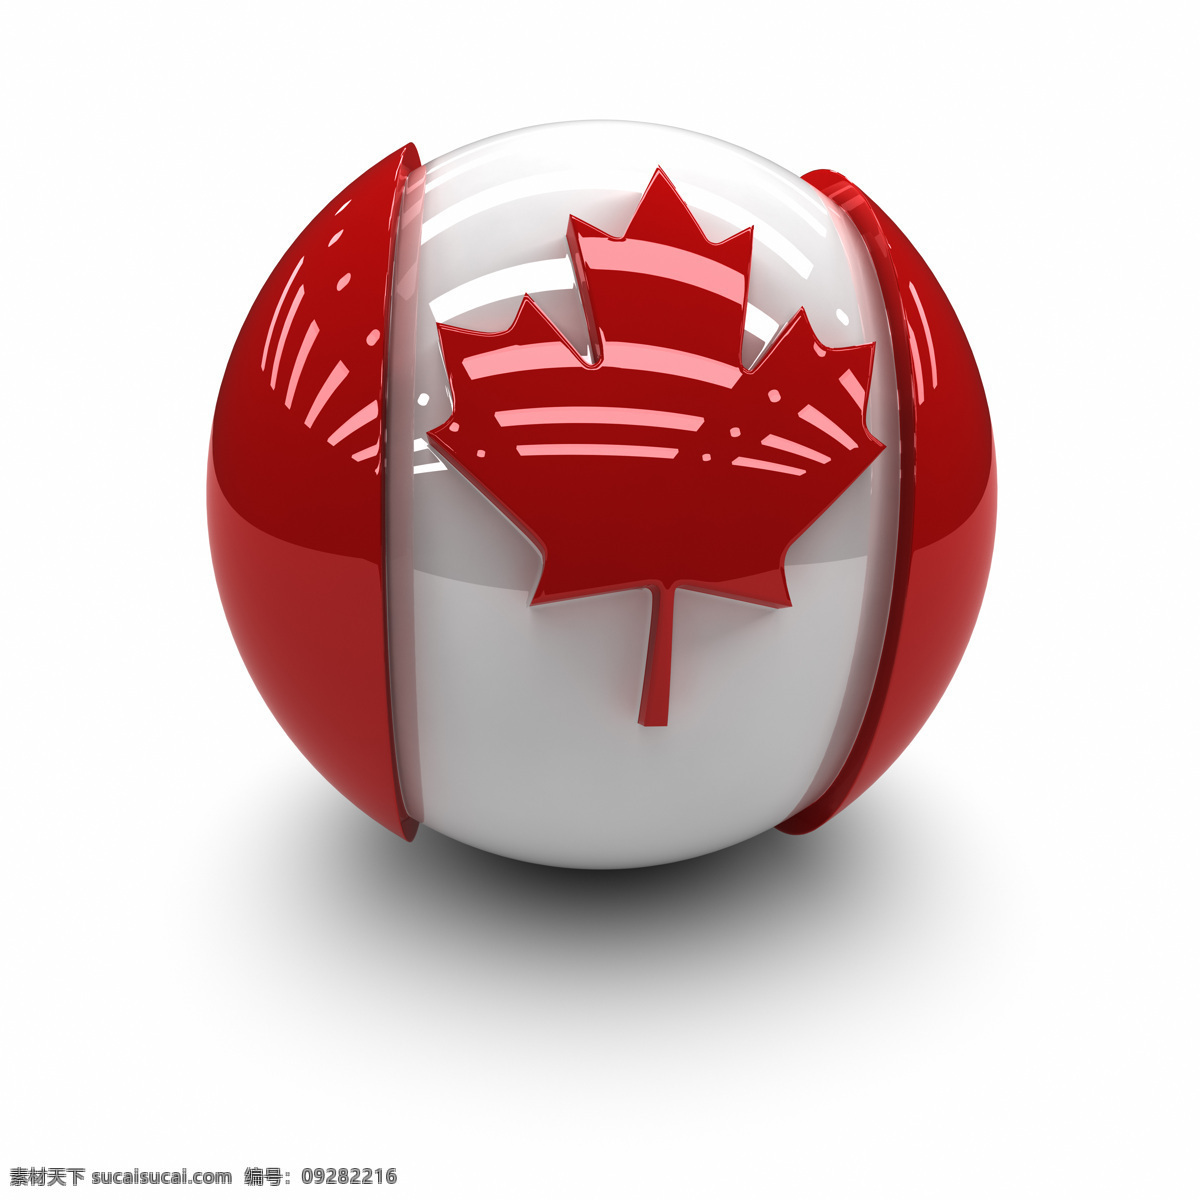 加拿大国旗 3d球体国旗 质感 国旗 各国国旗 旗帜 国旗图标 3d设计